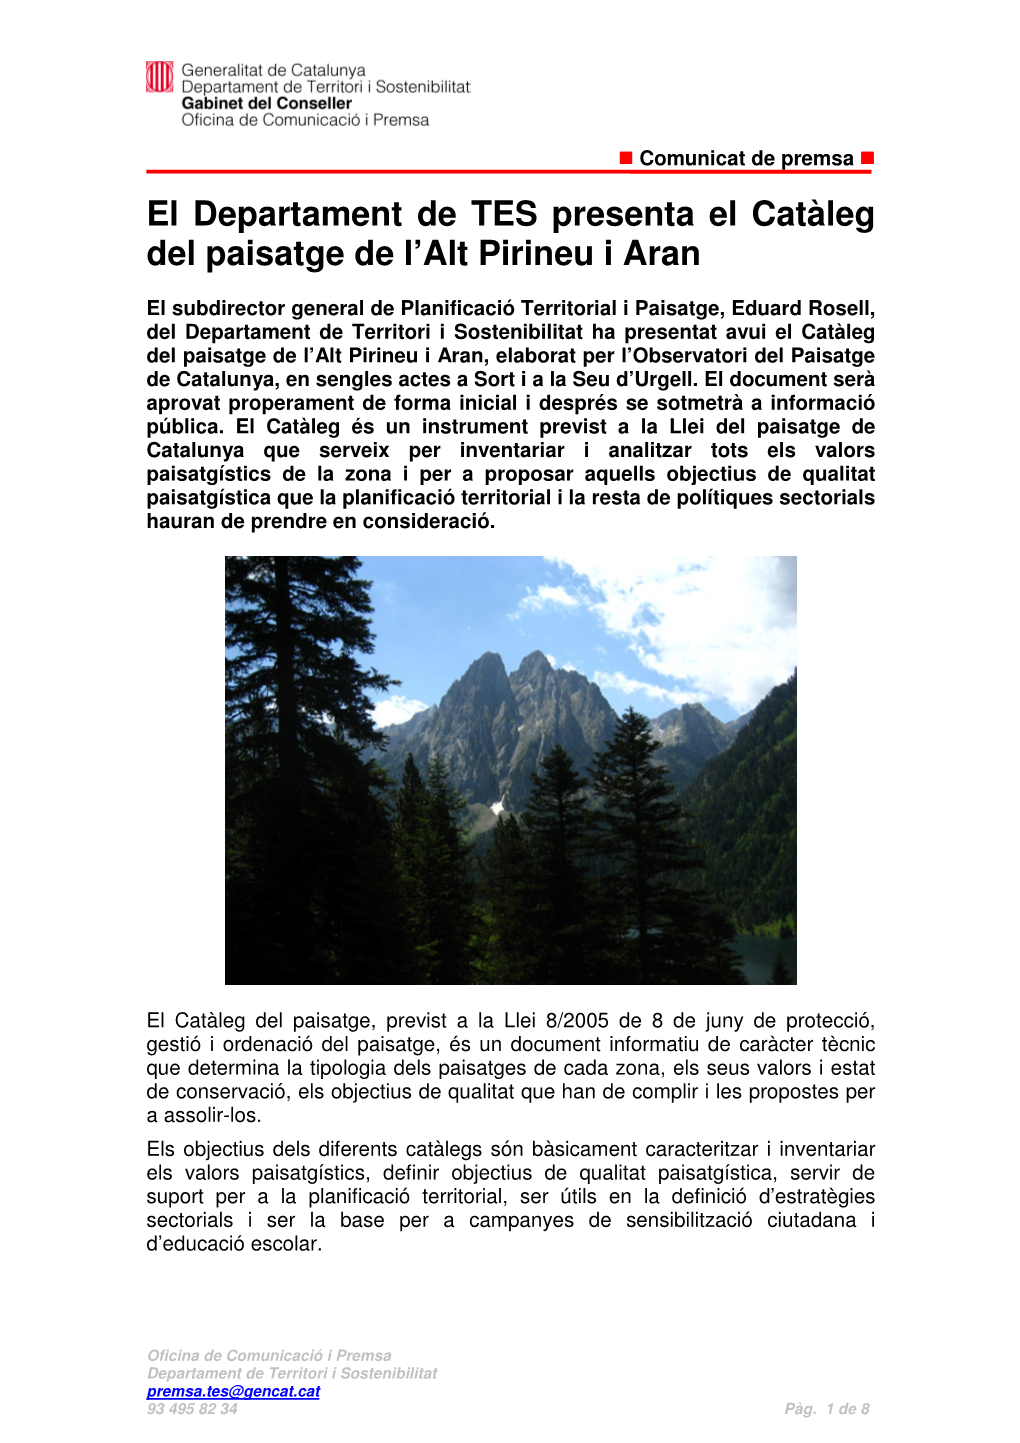 El Departament De TES Presenta El Catàleg Del Paisatge De L'alt Pirineu